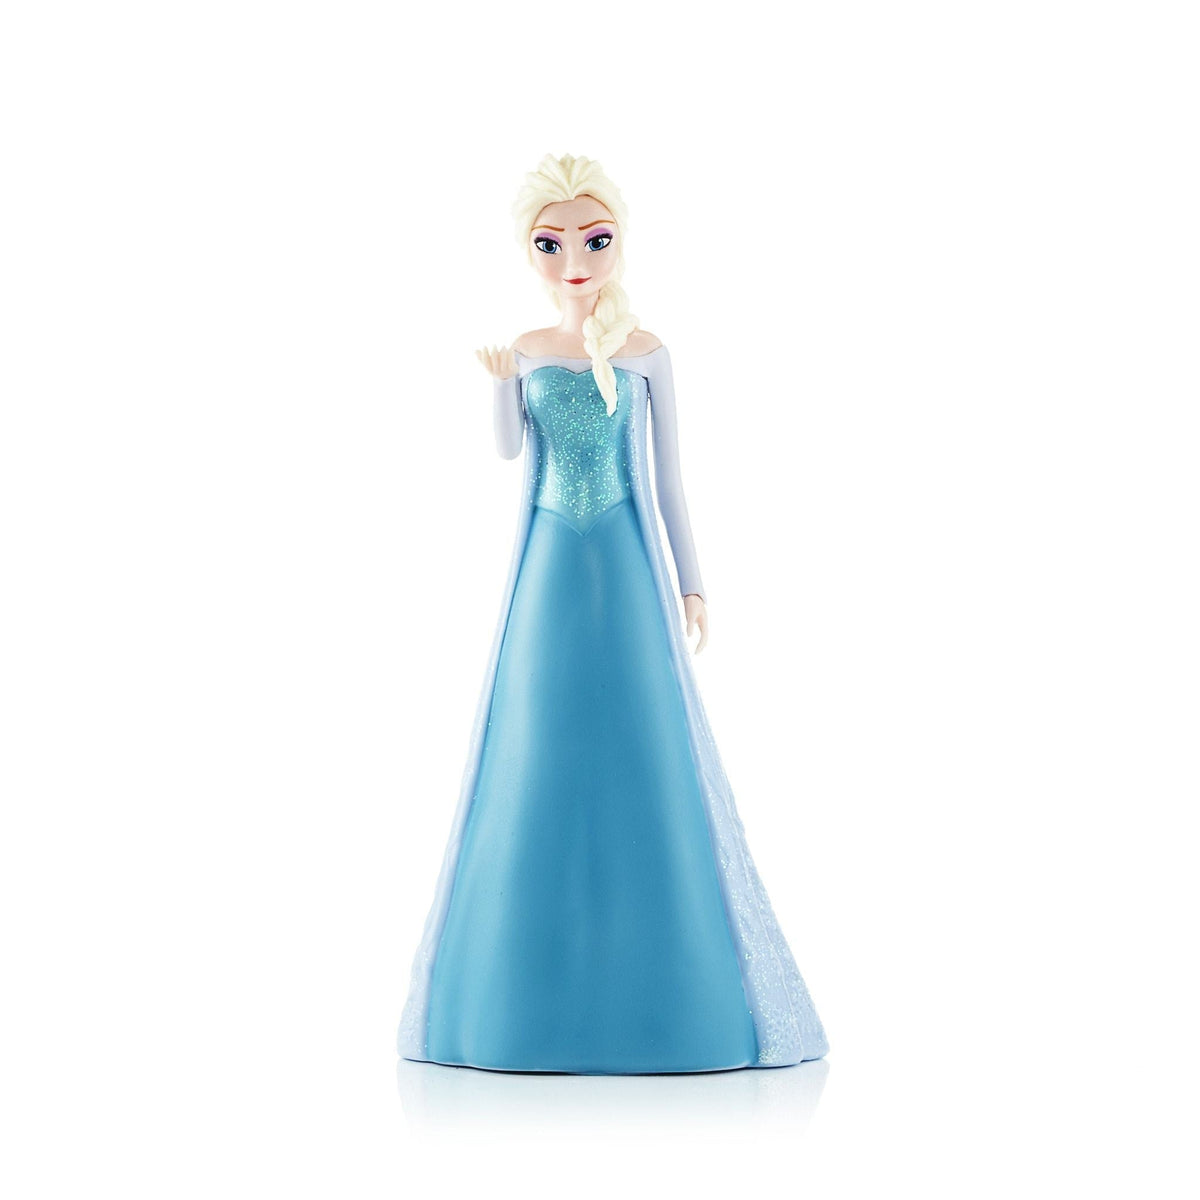 Frozen Elsa Figure Eau de Toilette Spray for Girls by Disney 3.4 oz.